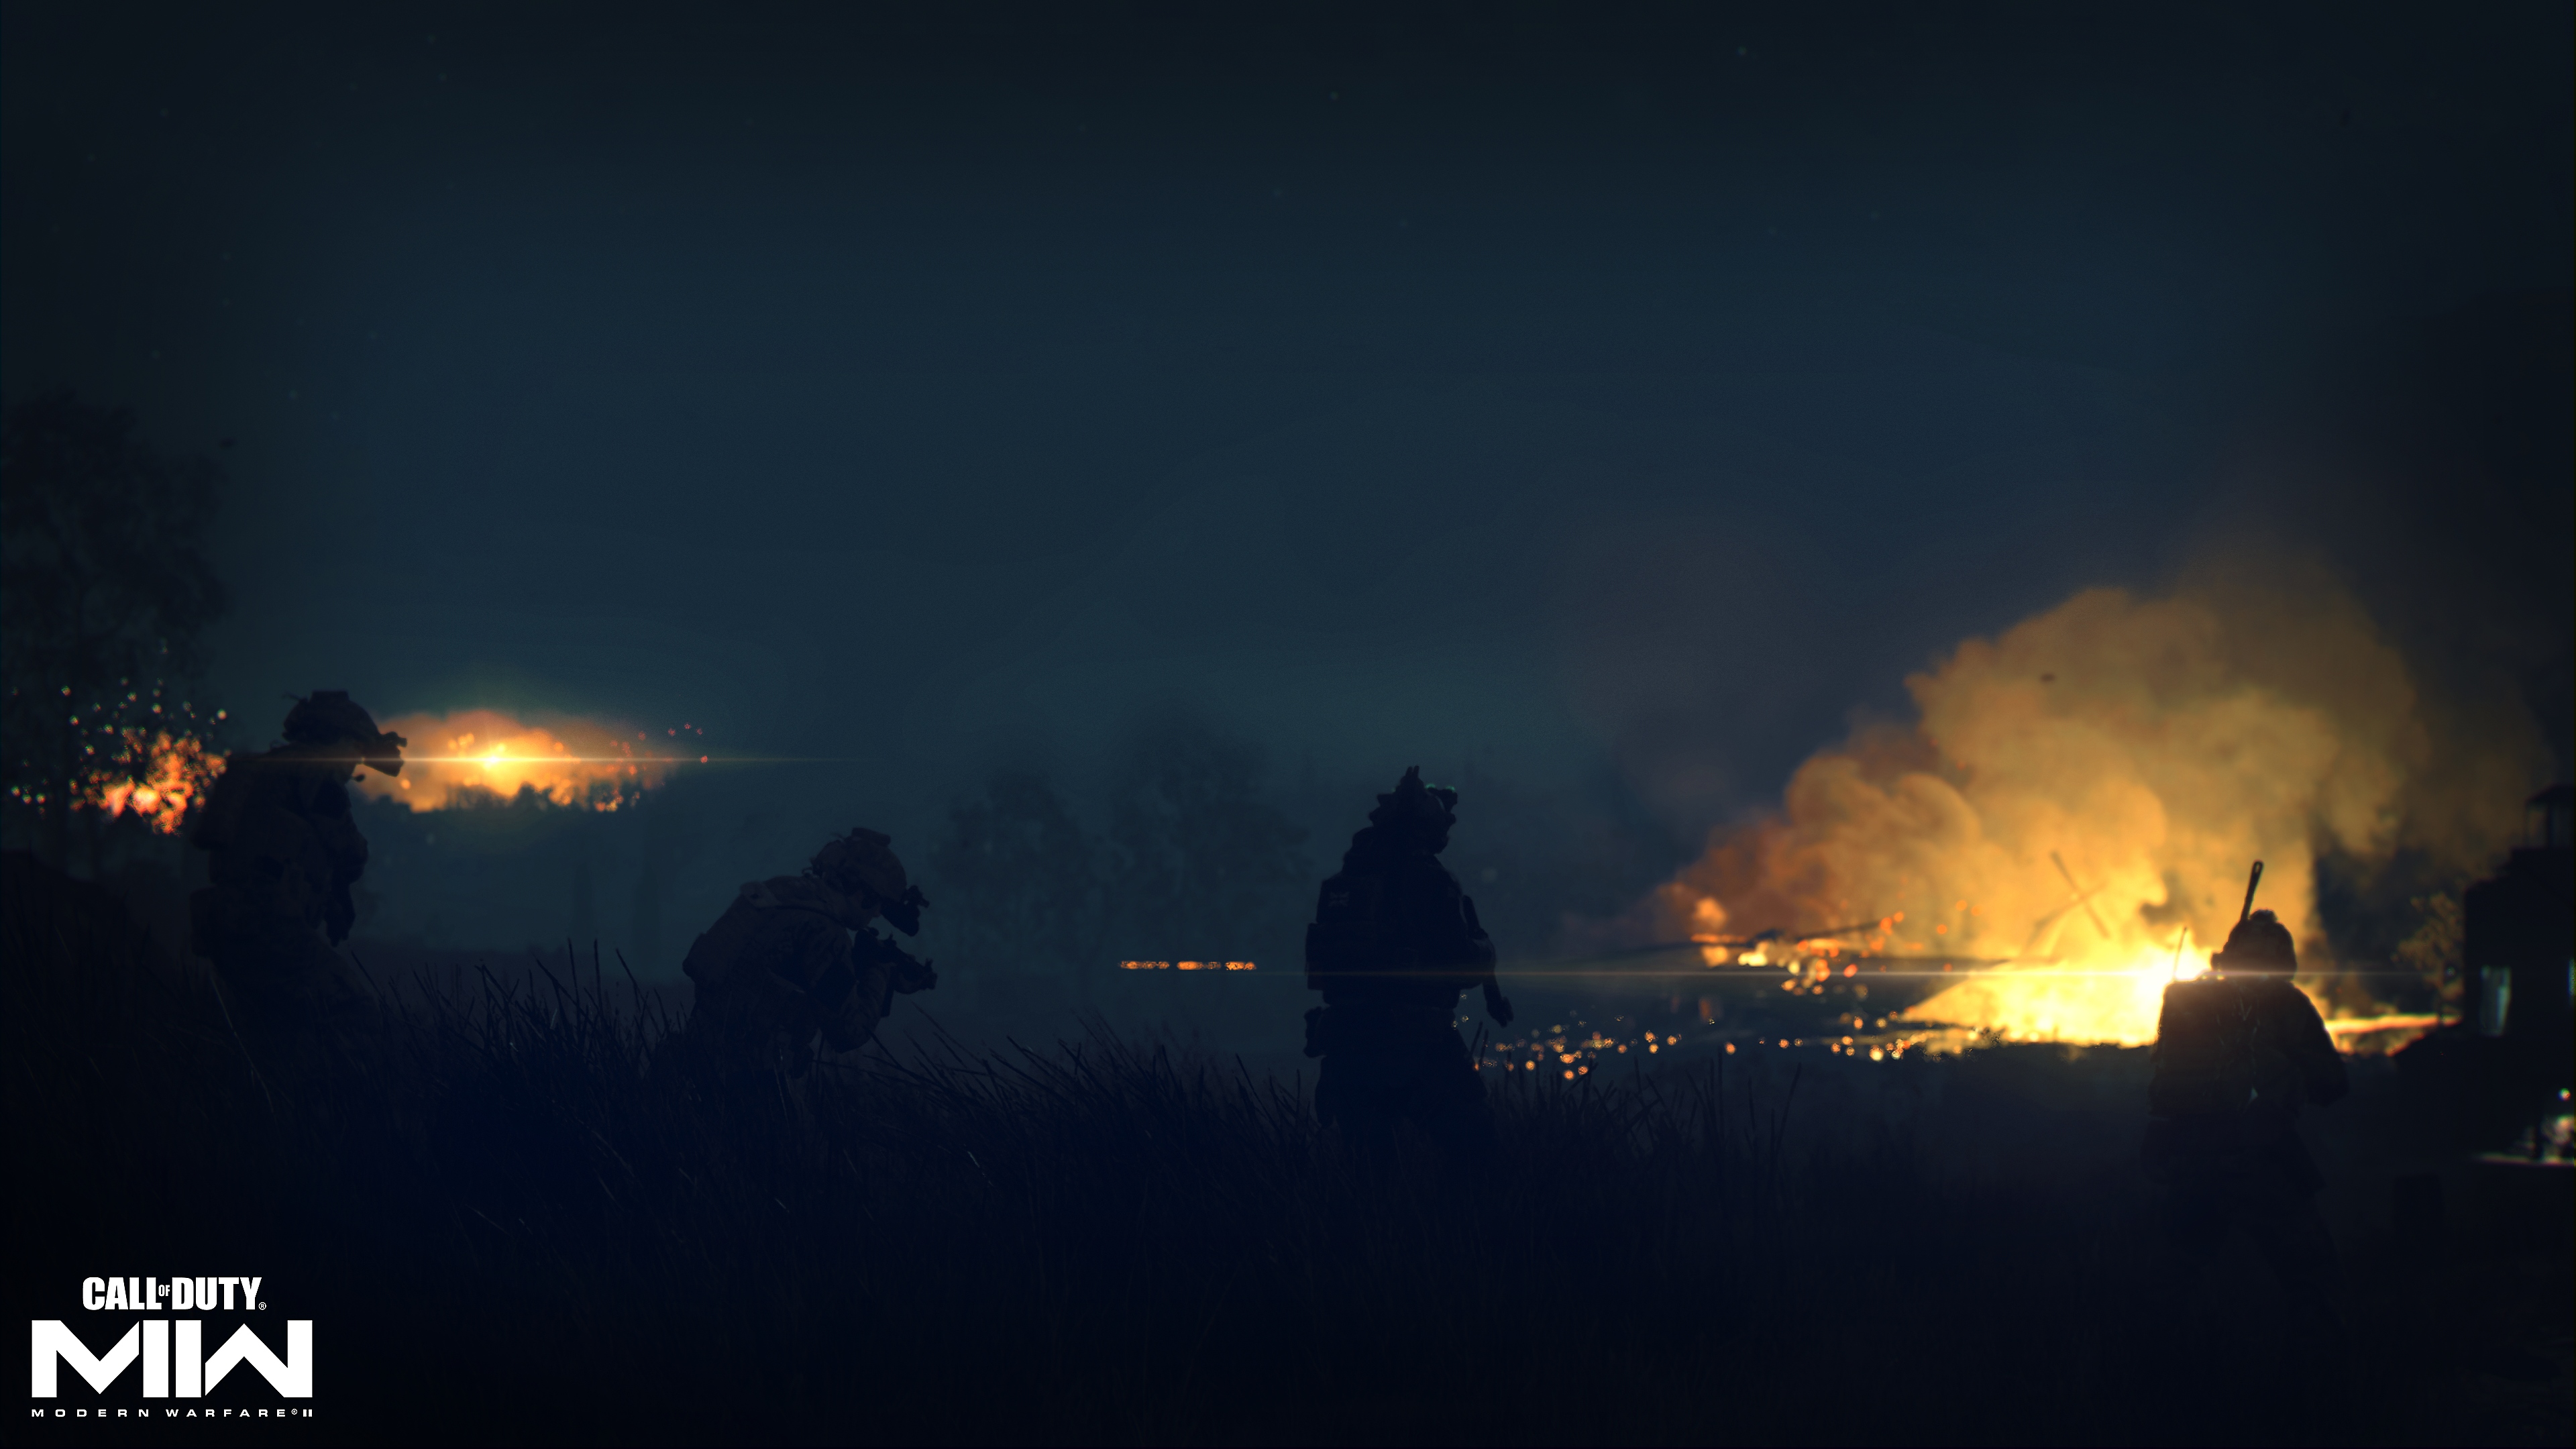 Call of Duty: Modern Warfare 2 2022 – snímek obrazovky zobrazující temnou krajinu se vzdáleným ohněm